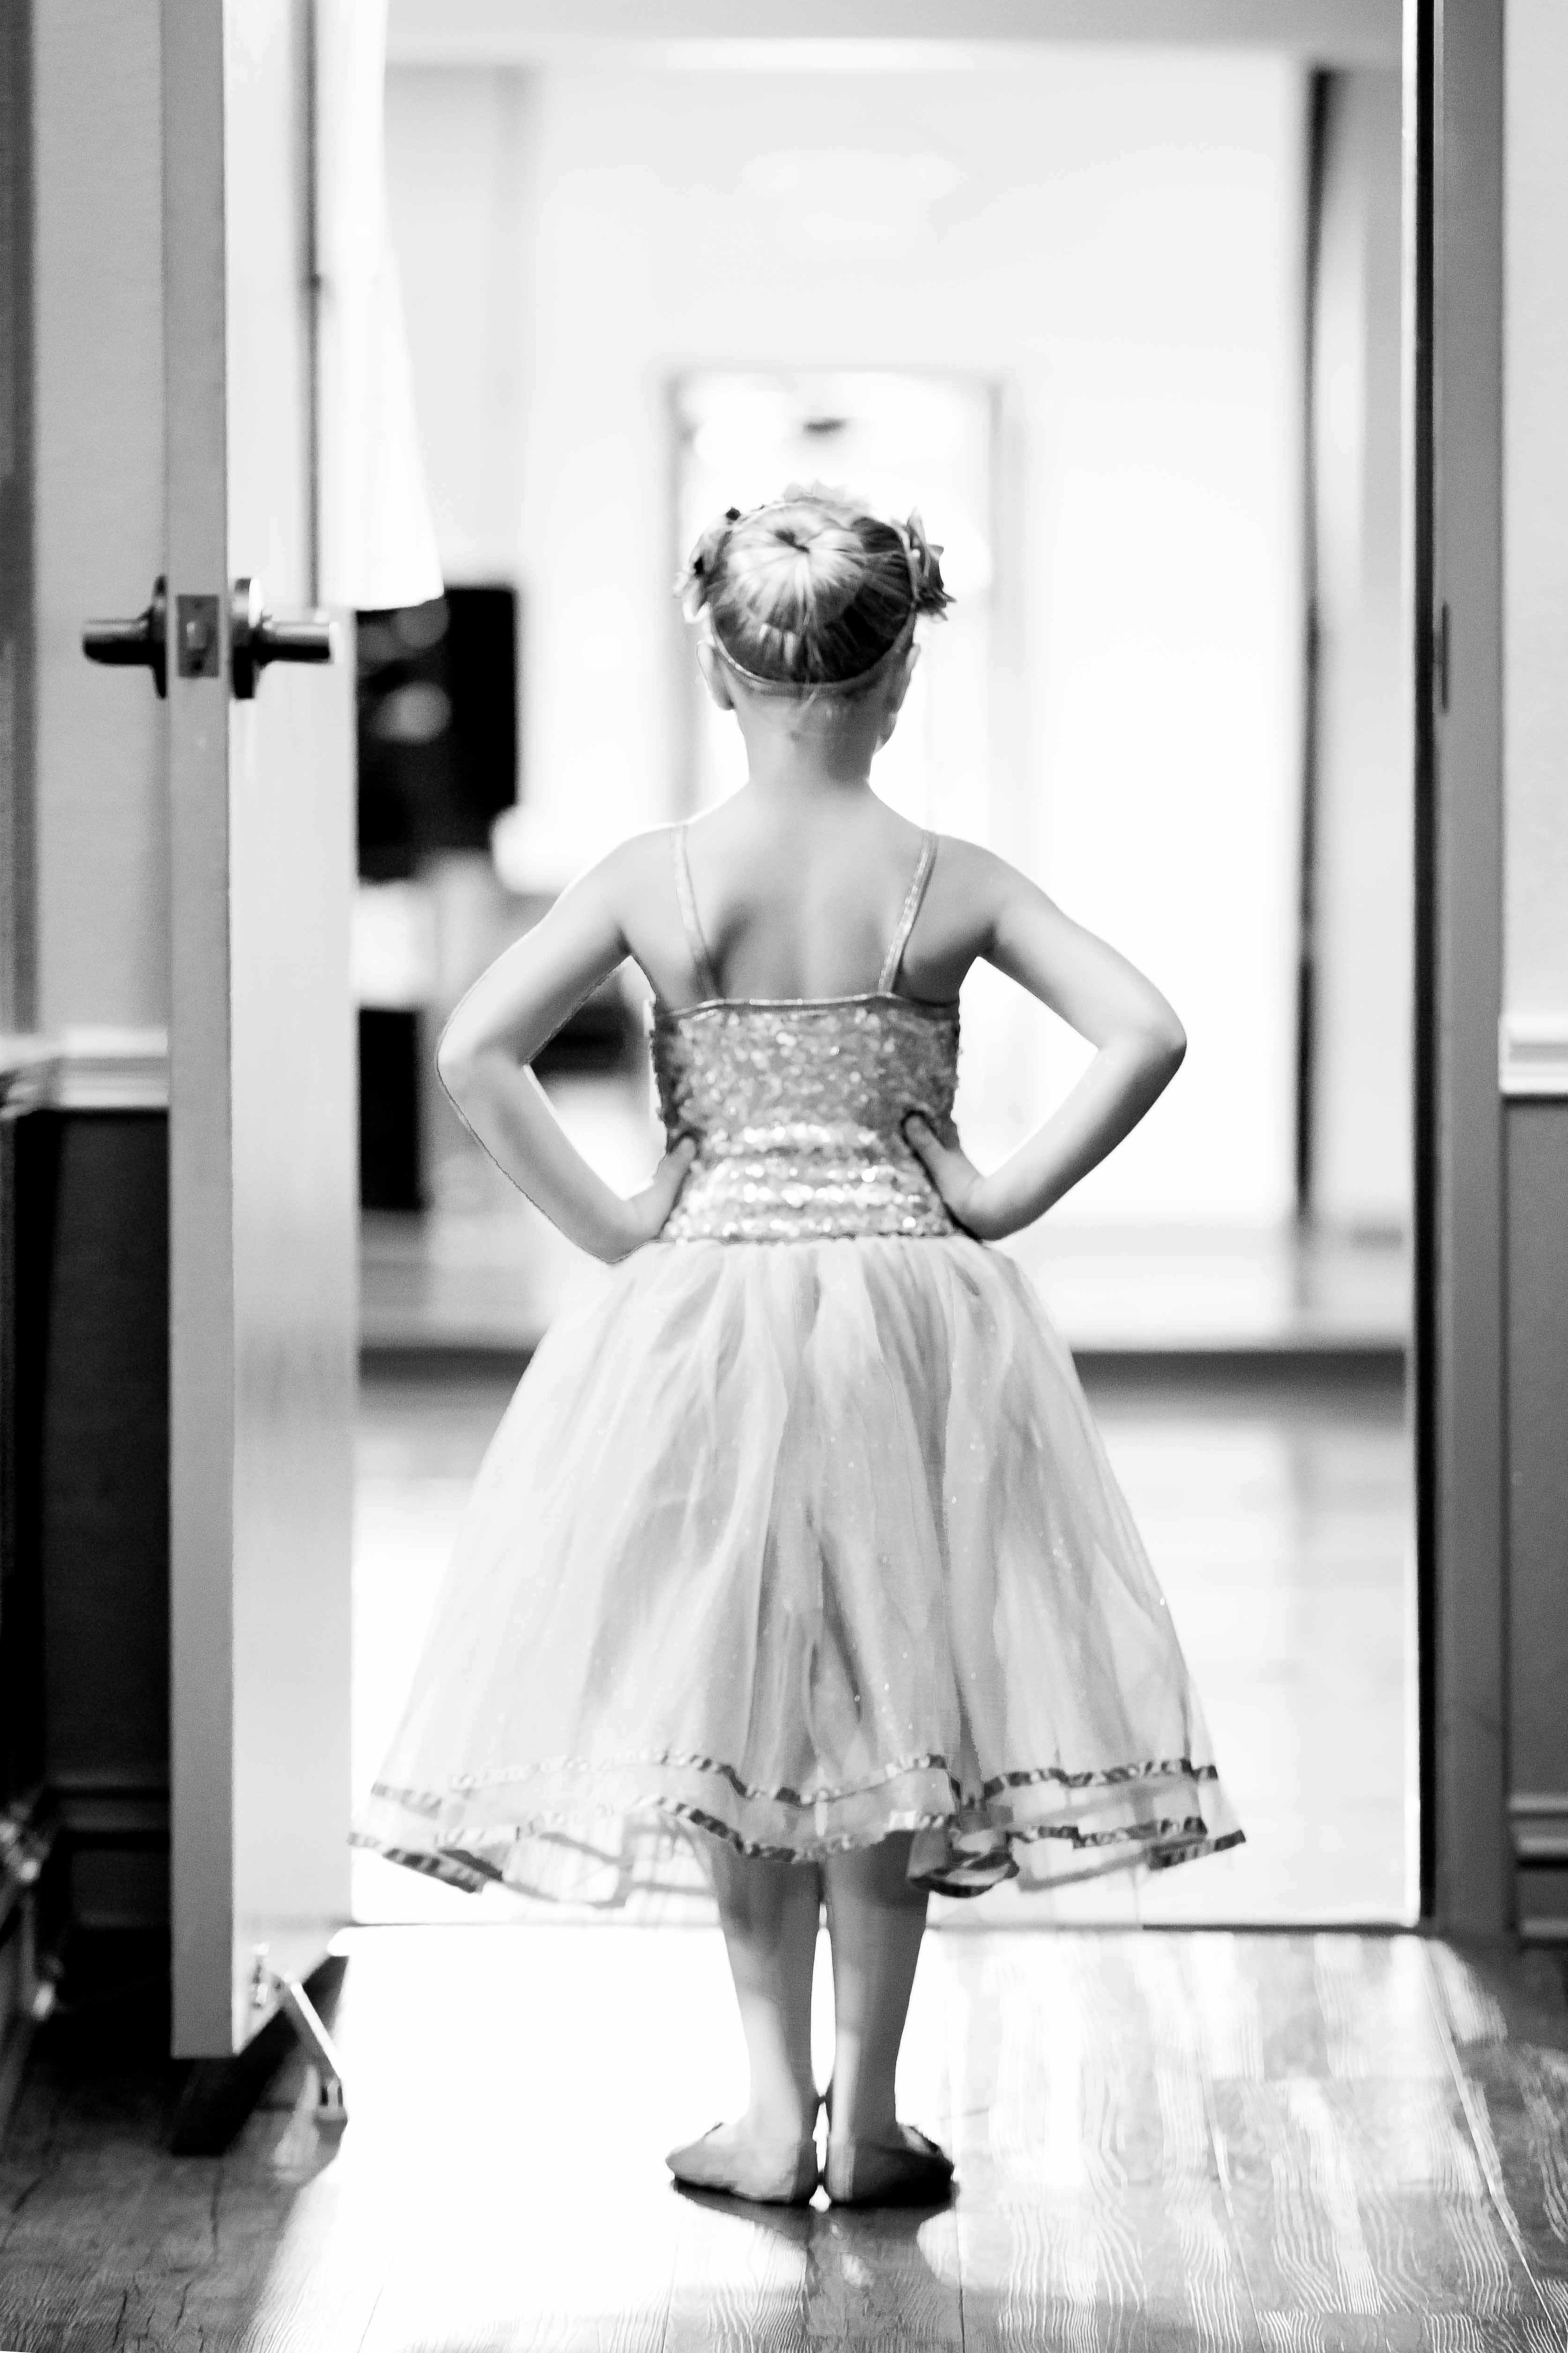 tiny dancer posed in doorway